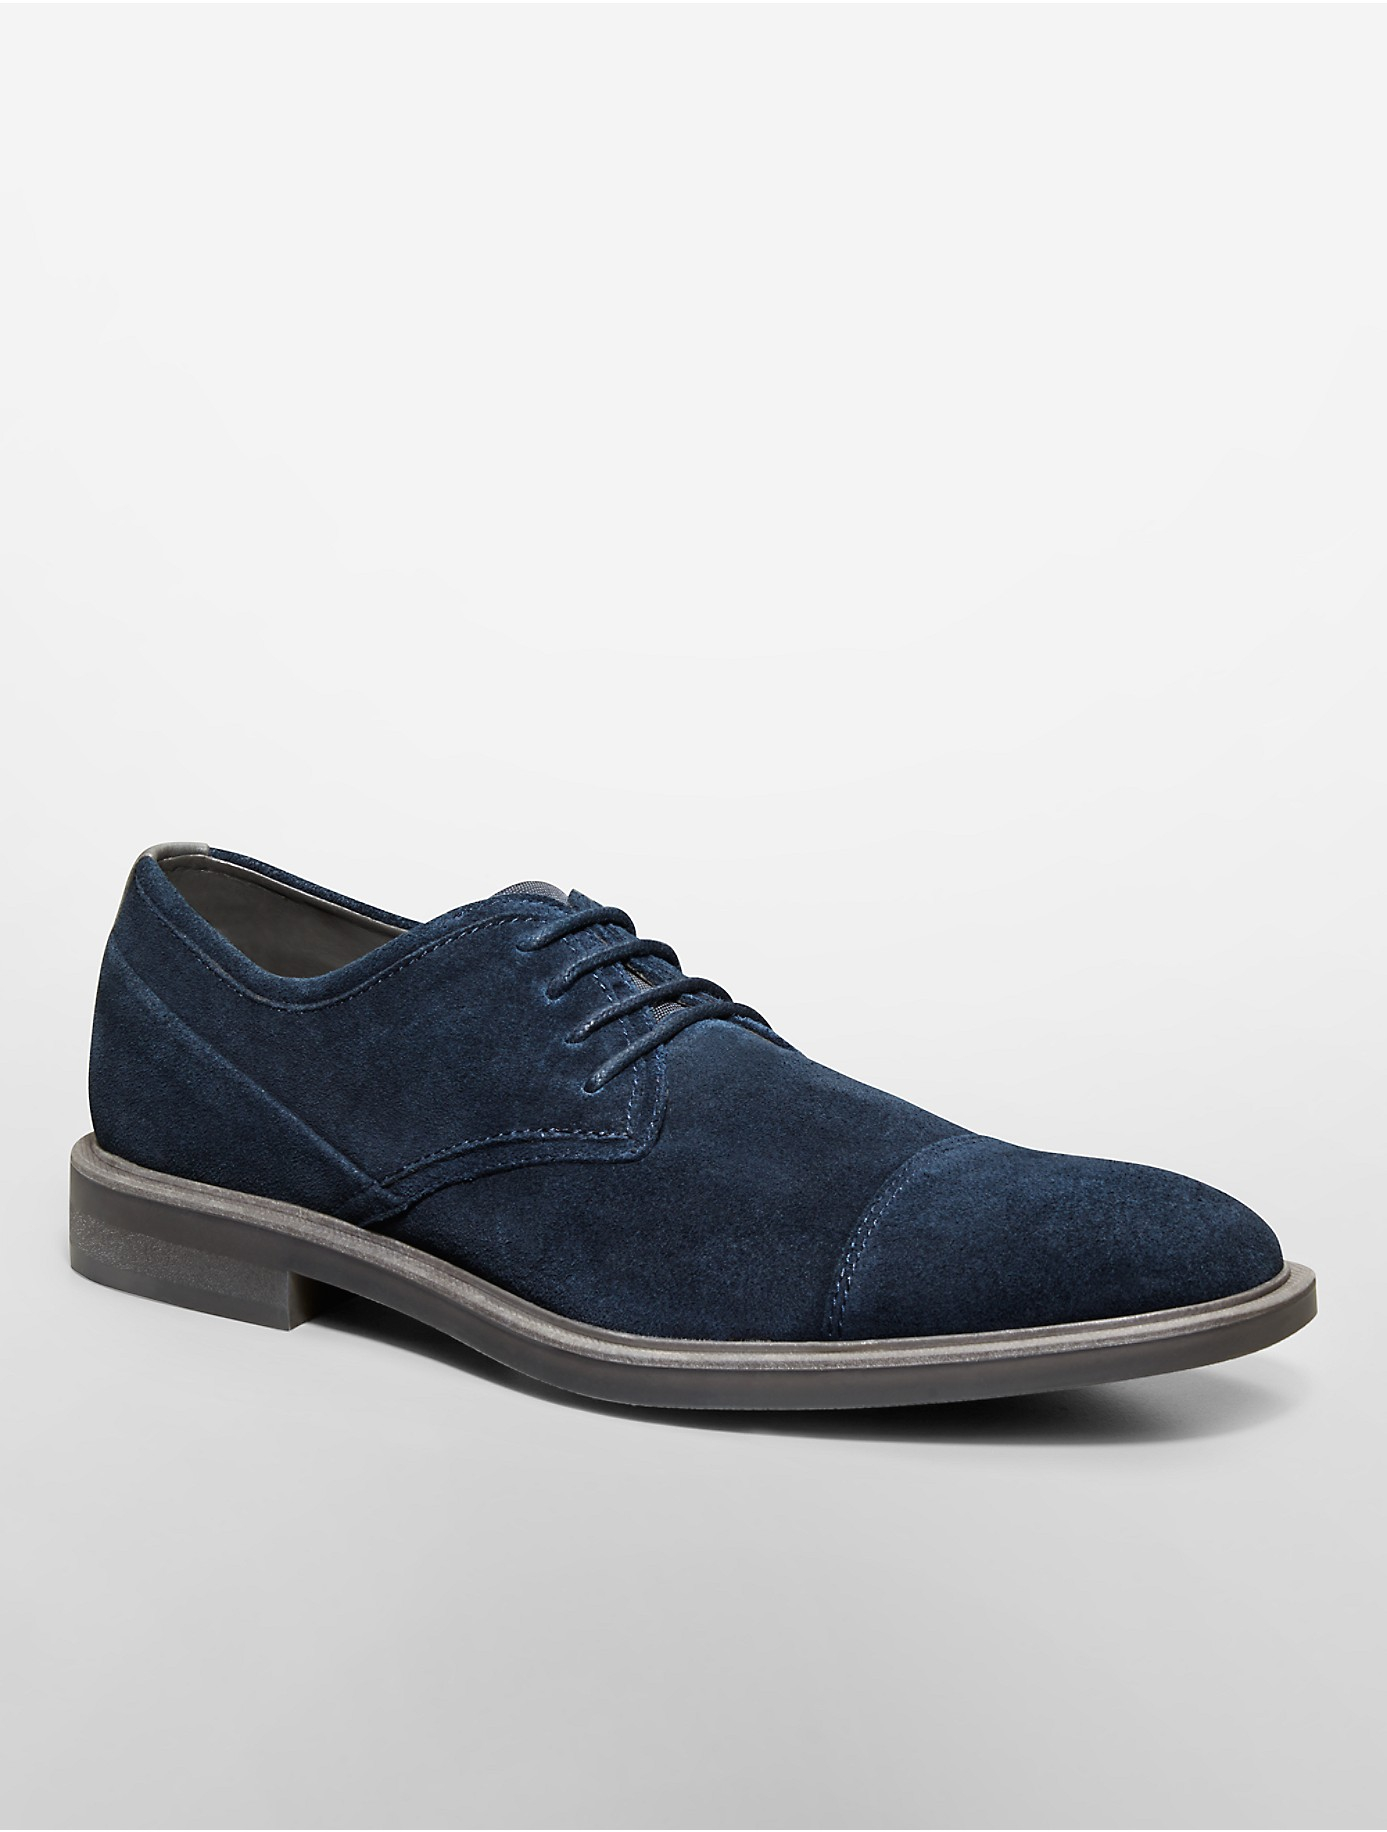 Stuwkracht wandelen Defilé Calvin Klein Suede White Label Upton Lace-Up Oxford Shoe in Dark Navy  (Blue) - Lyst